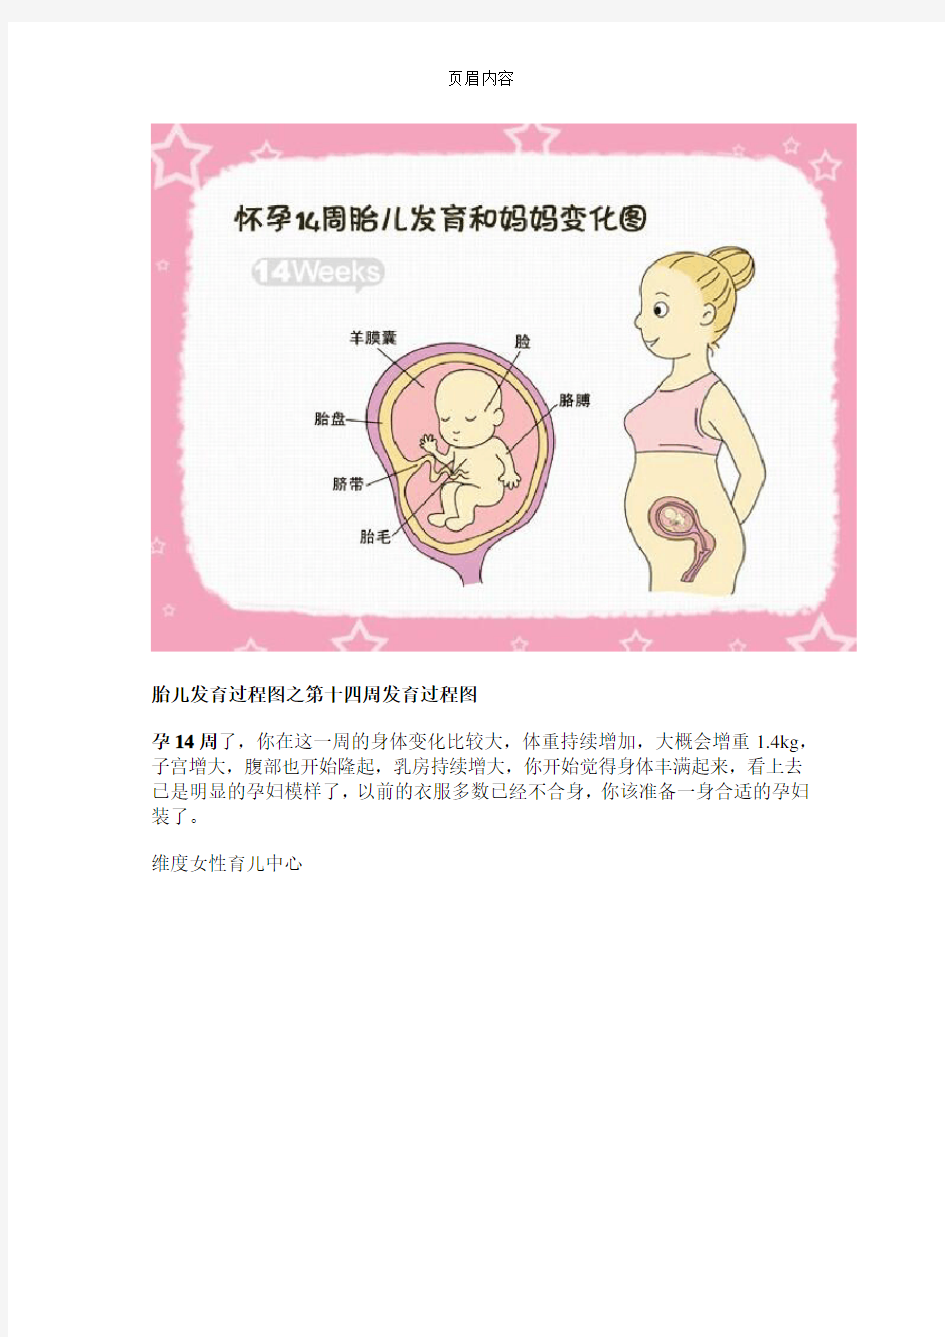 胎儿发育过程图之第十四周发育过程图